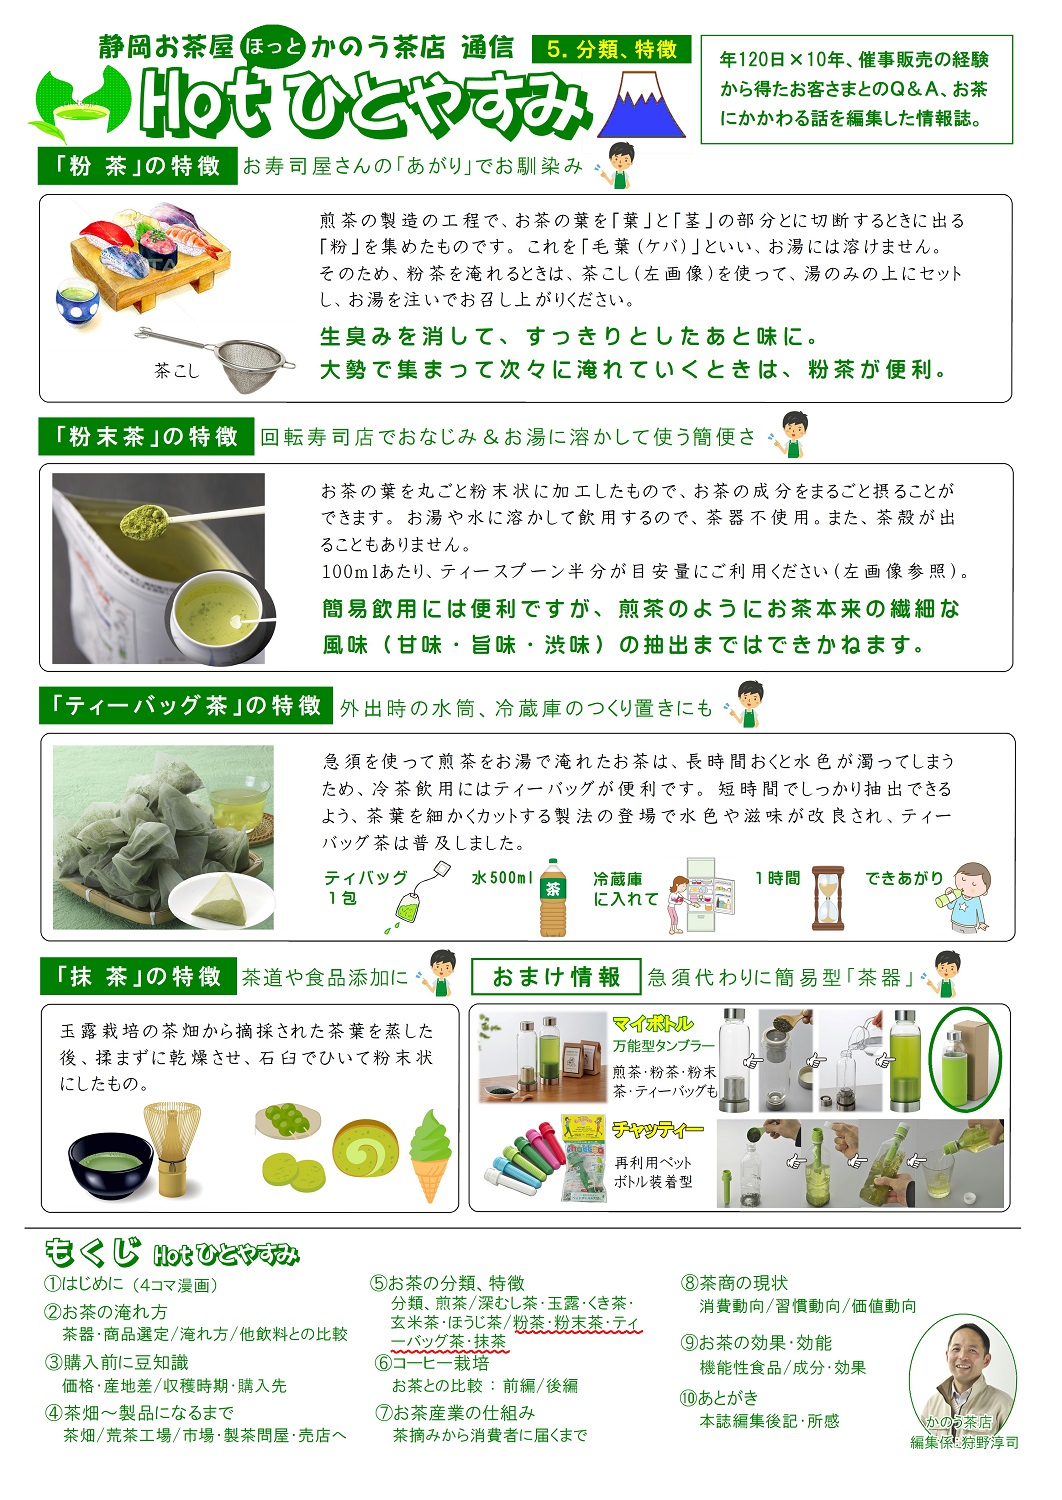 (5)分類･特徴(粉茶など)